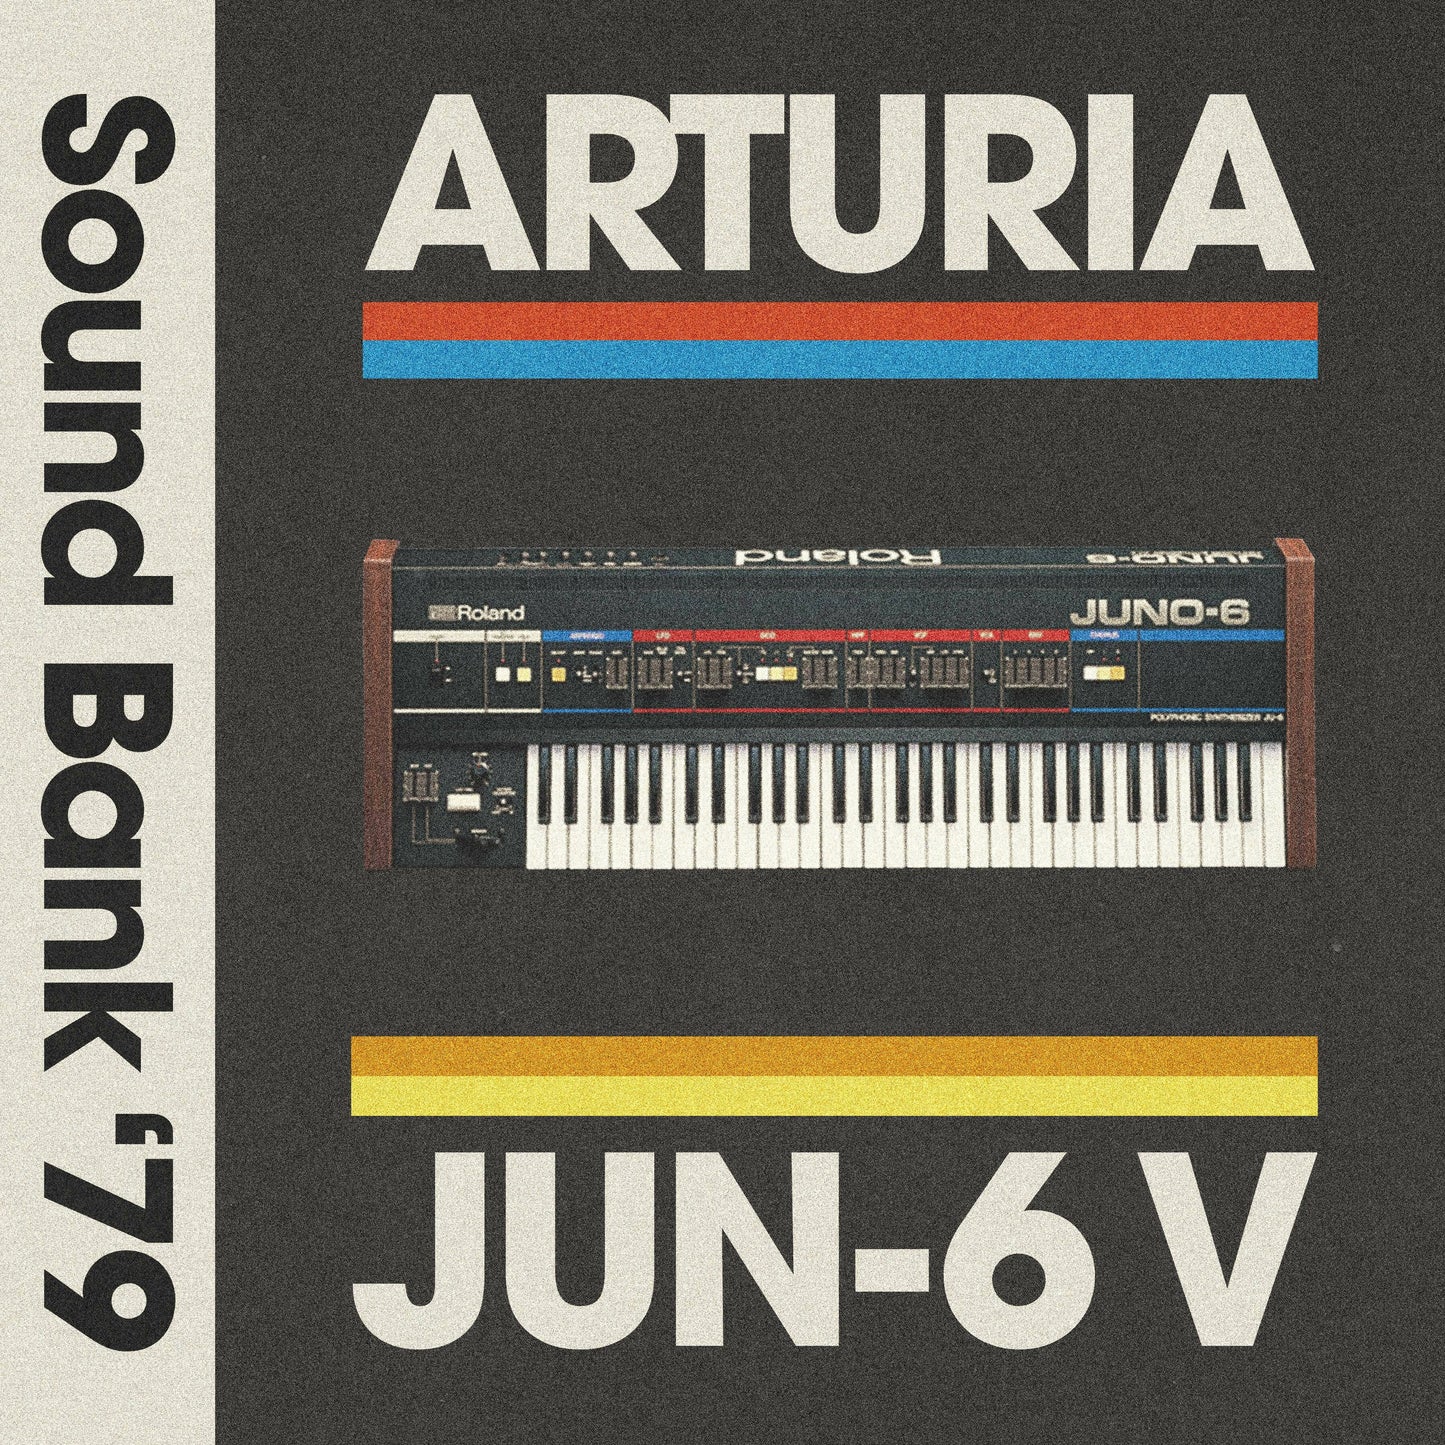 Arturia Jun-6 V - Sound Bank '79